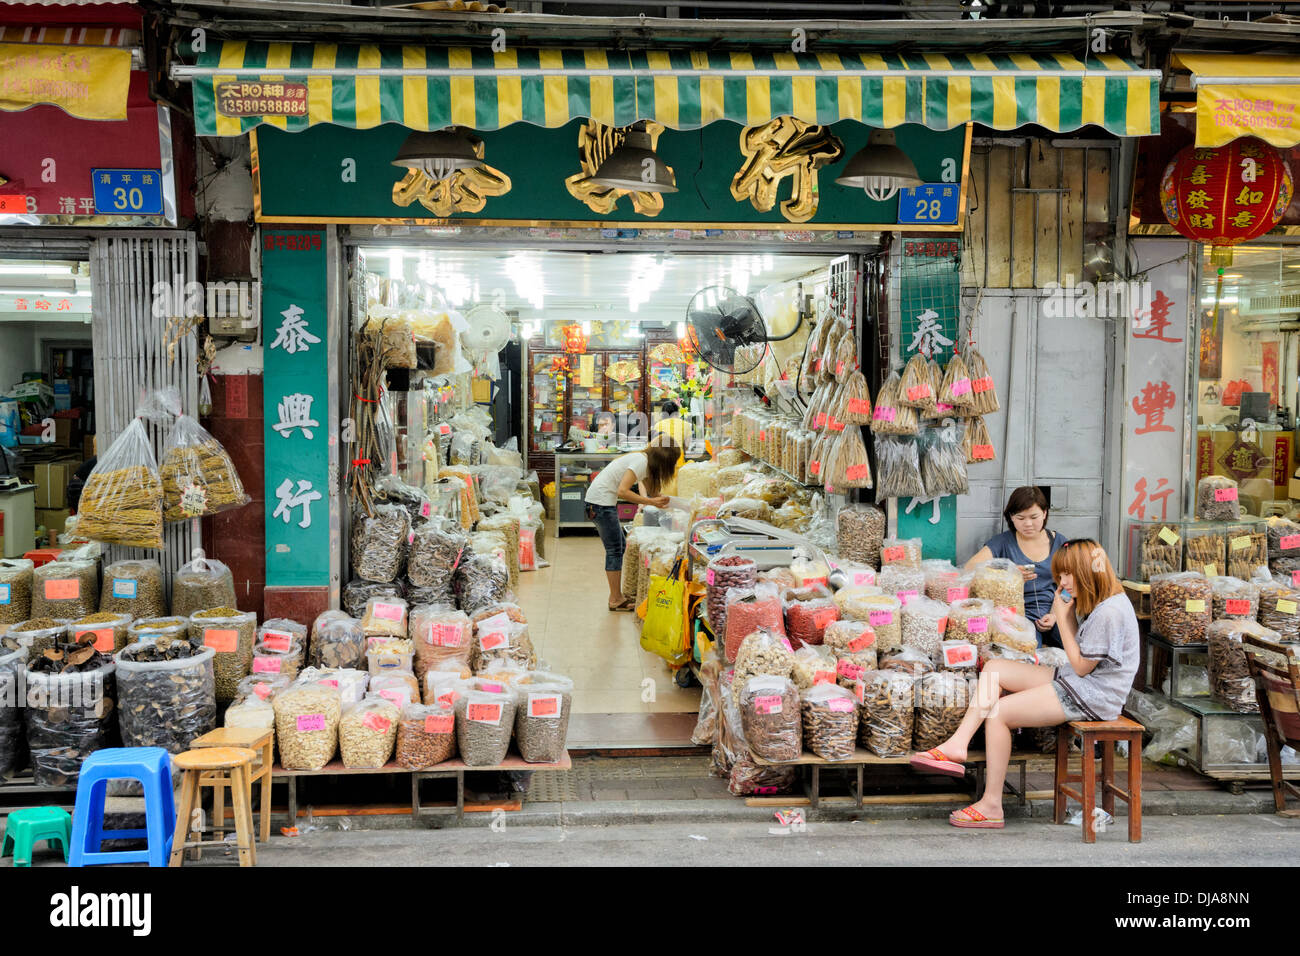 Ouvrez la façade typiquement chinois-shop avec des marchandises sur l'affichage Banque D'Images